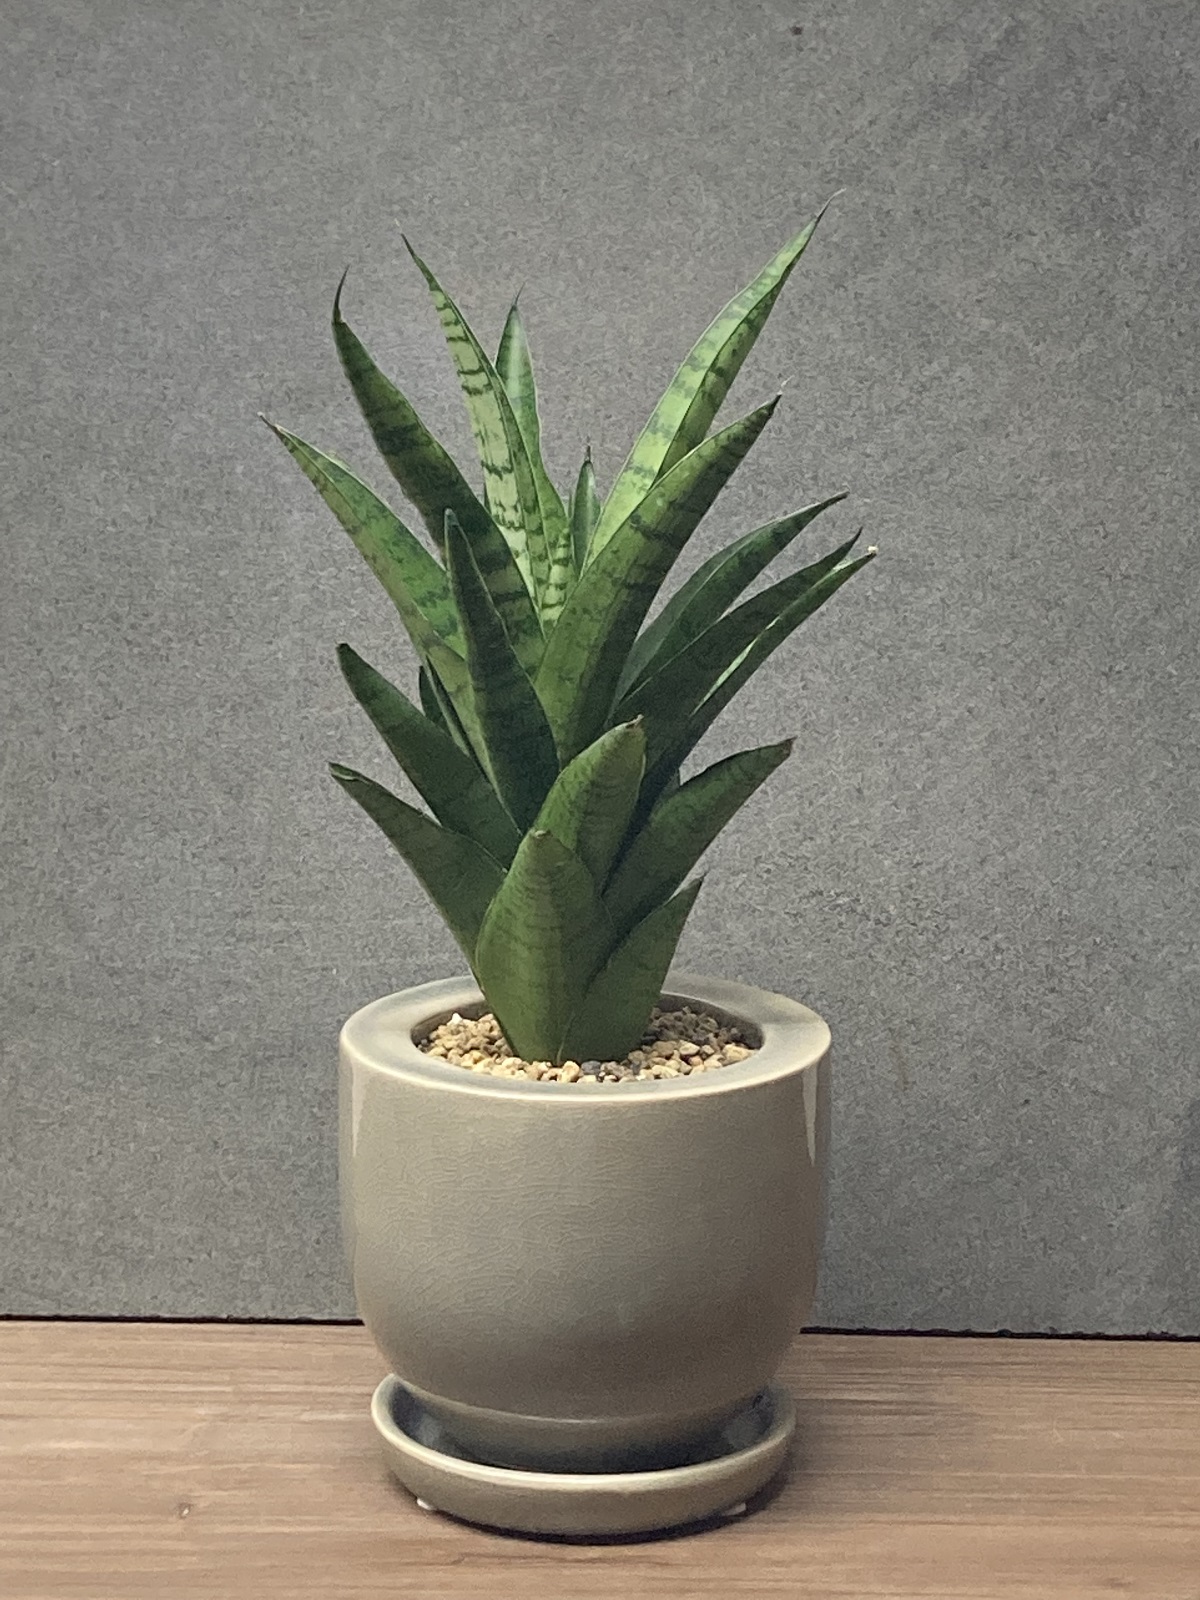 サンスベリア・ハイブリット+陶器鉢 - 雨読堂 -UDOKUDO- 観葉植物と鉢のオンラインショップ